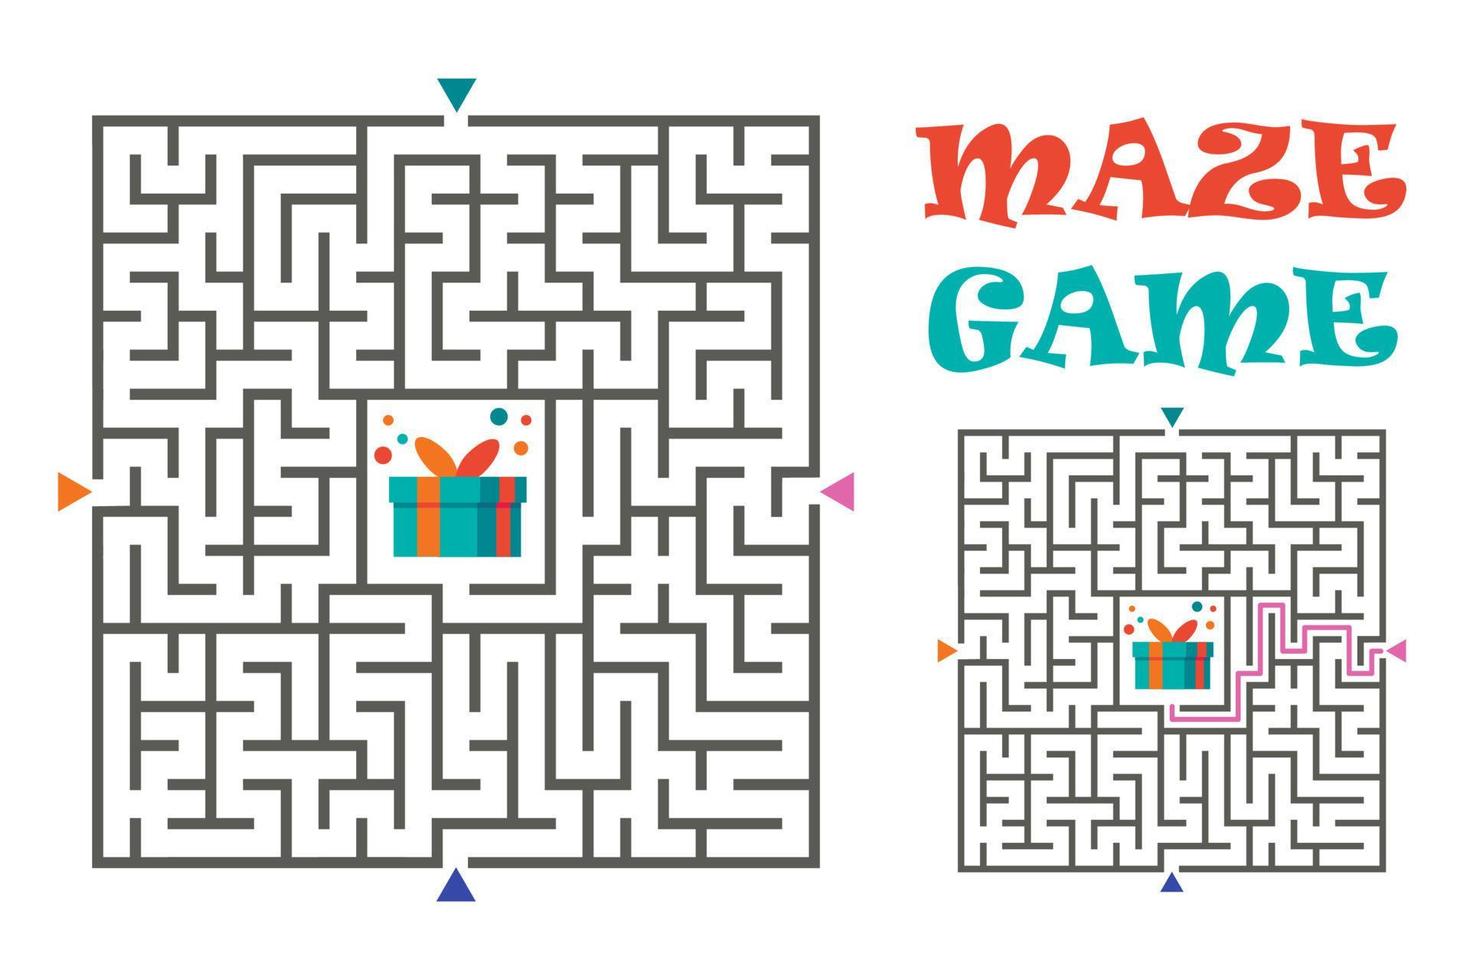 juego de laberinto de laberinto cuadrado para niños. enigma lógico. Cuatro entradas y un camino derecho. ilustración vectorial aislado sobre fondo blanco. vector